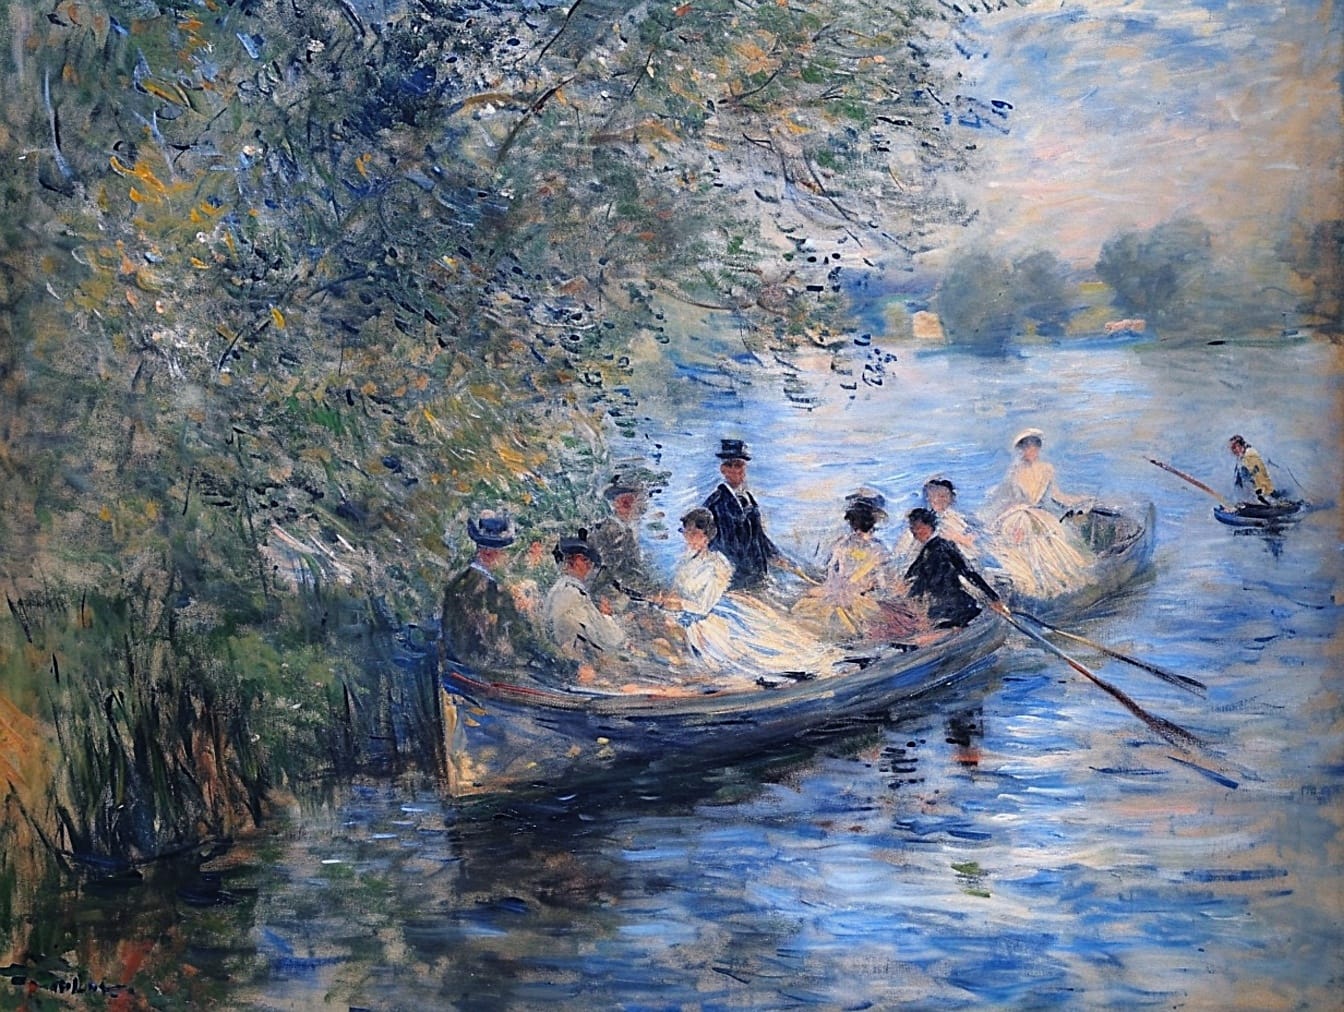 Картина маслом групи людей, що веслують на човні, що зображує спосіб життя заможних людей у 19 столітті